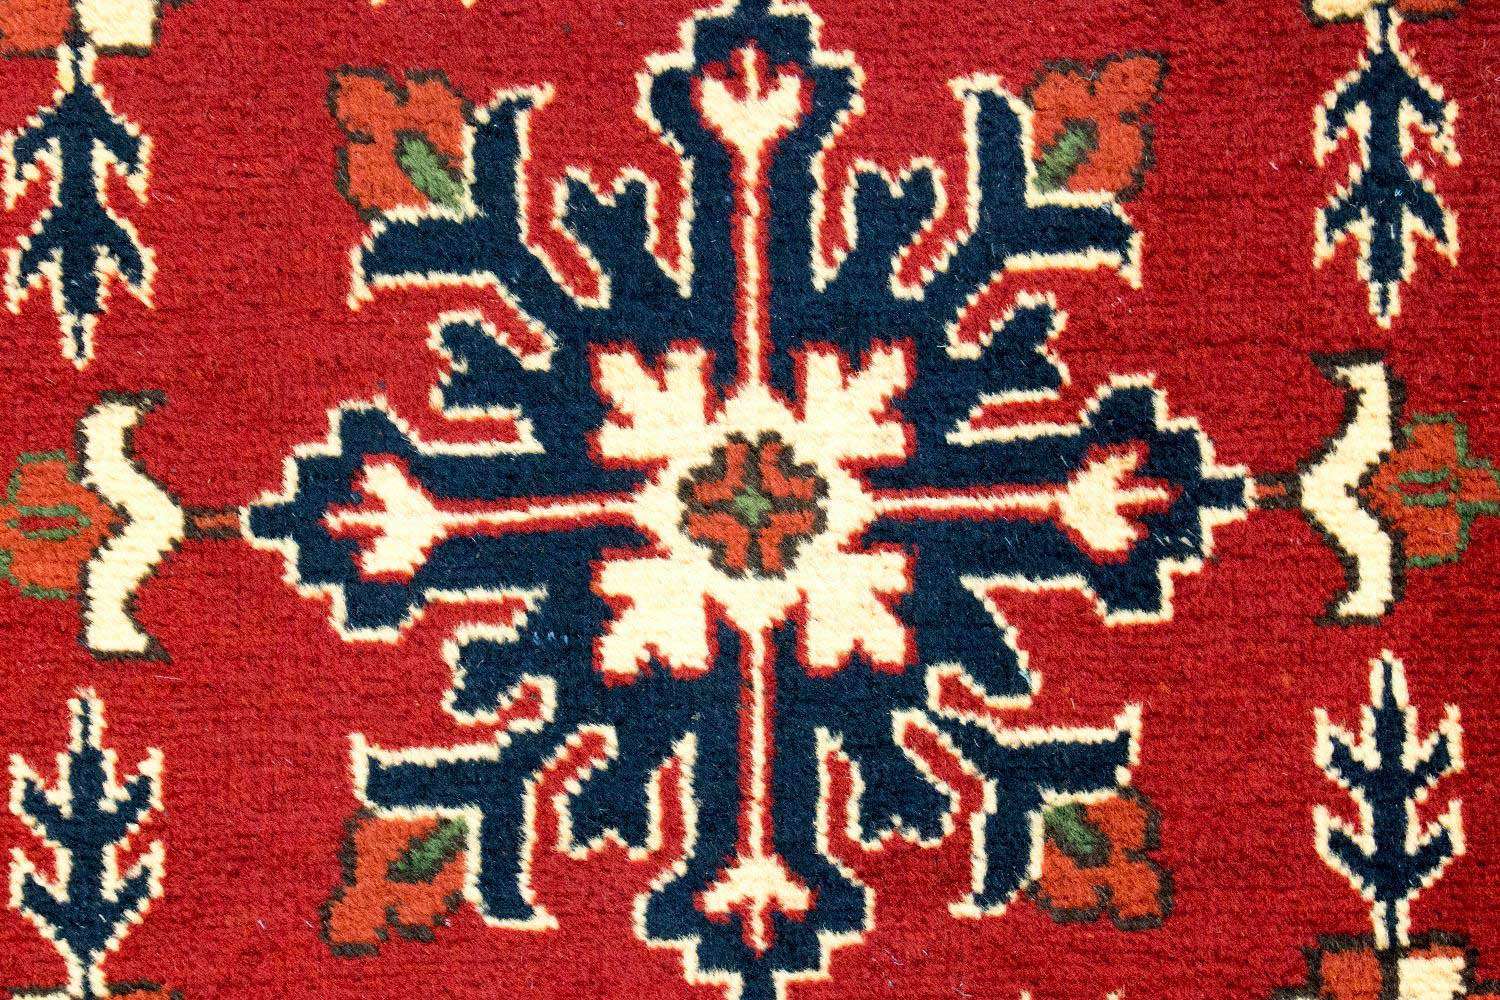 Afghan Teppich - Hatschlu 297 x 84 cm